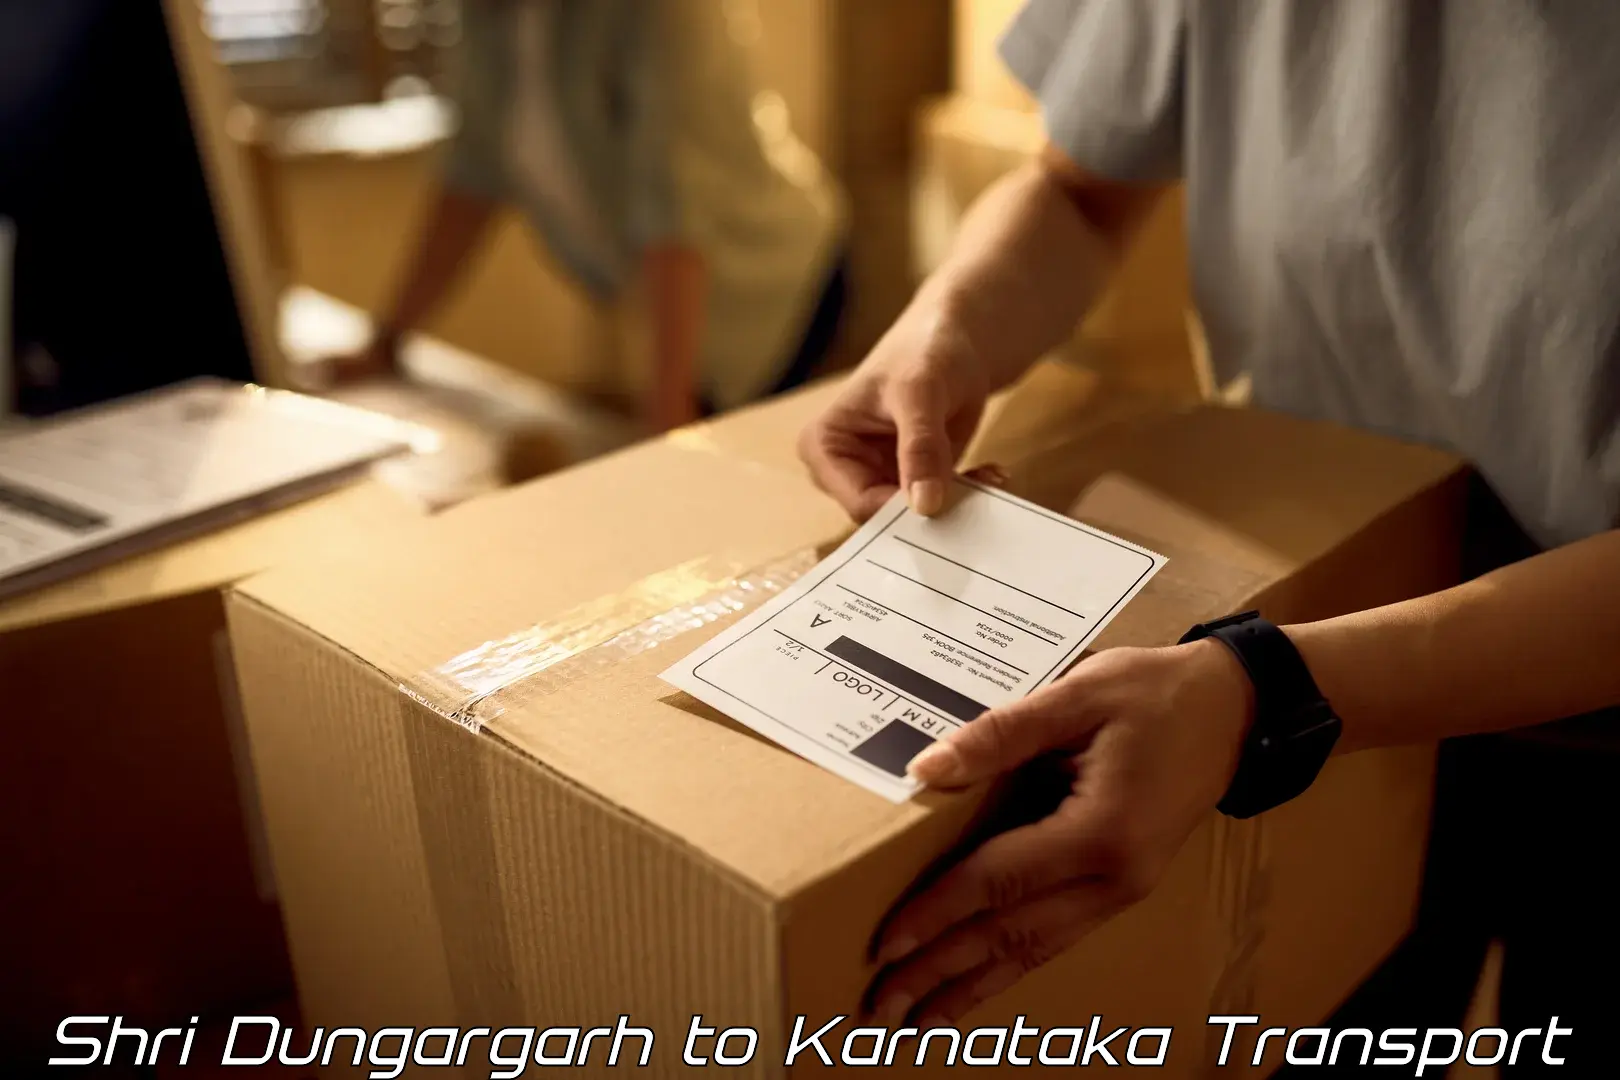 Cargo train transport services Shri Dungargarh to Dabaspet